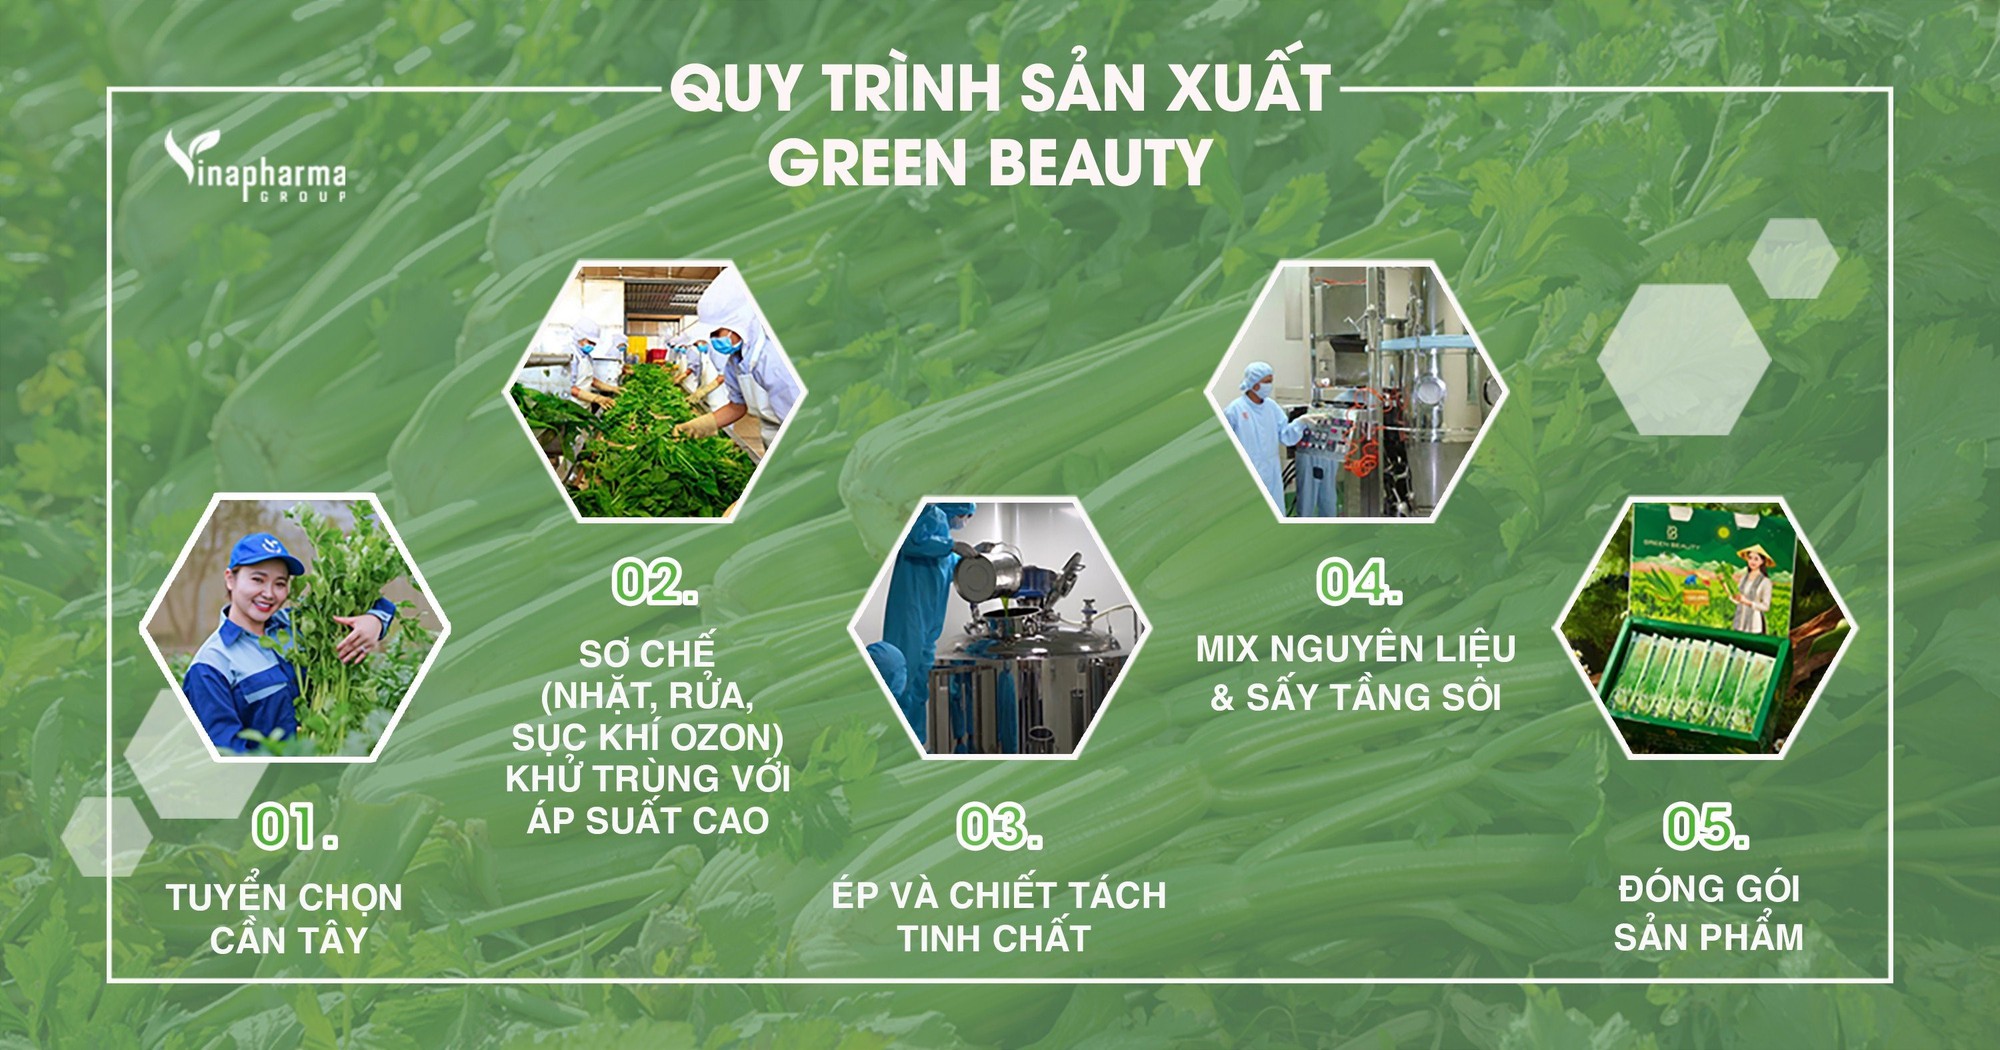 Green Beauty CẦN TÂY HÒA TAN xuất khẩu chính ngạch sang Trung Quốc - Ảnh 3.